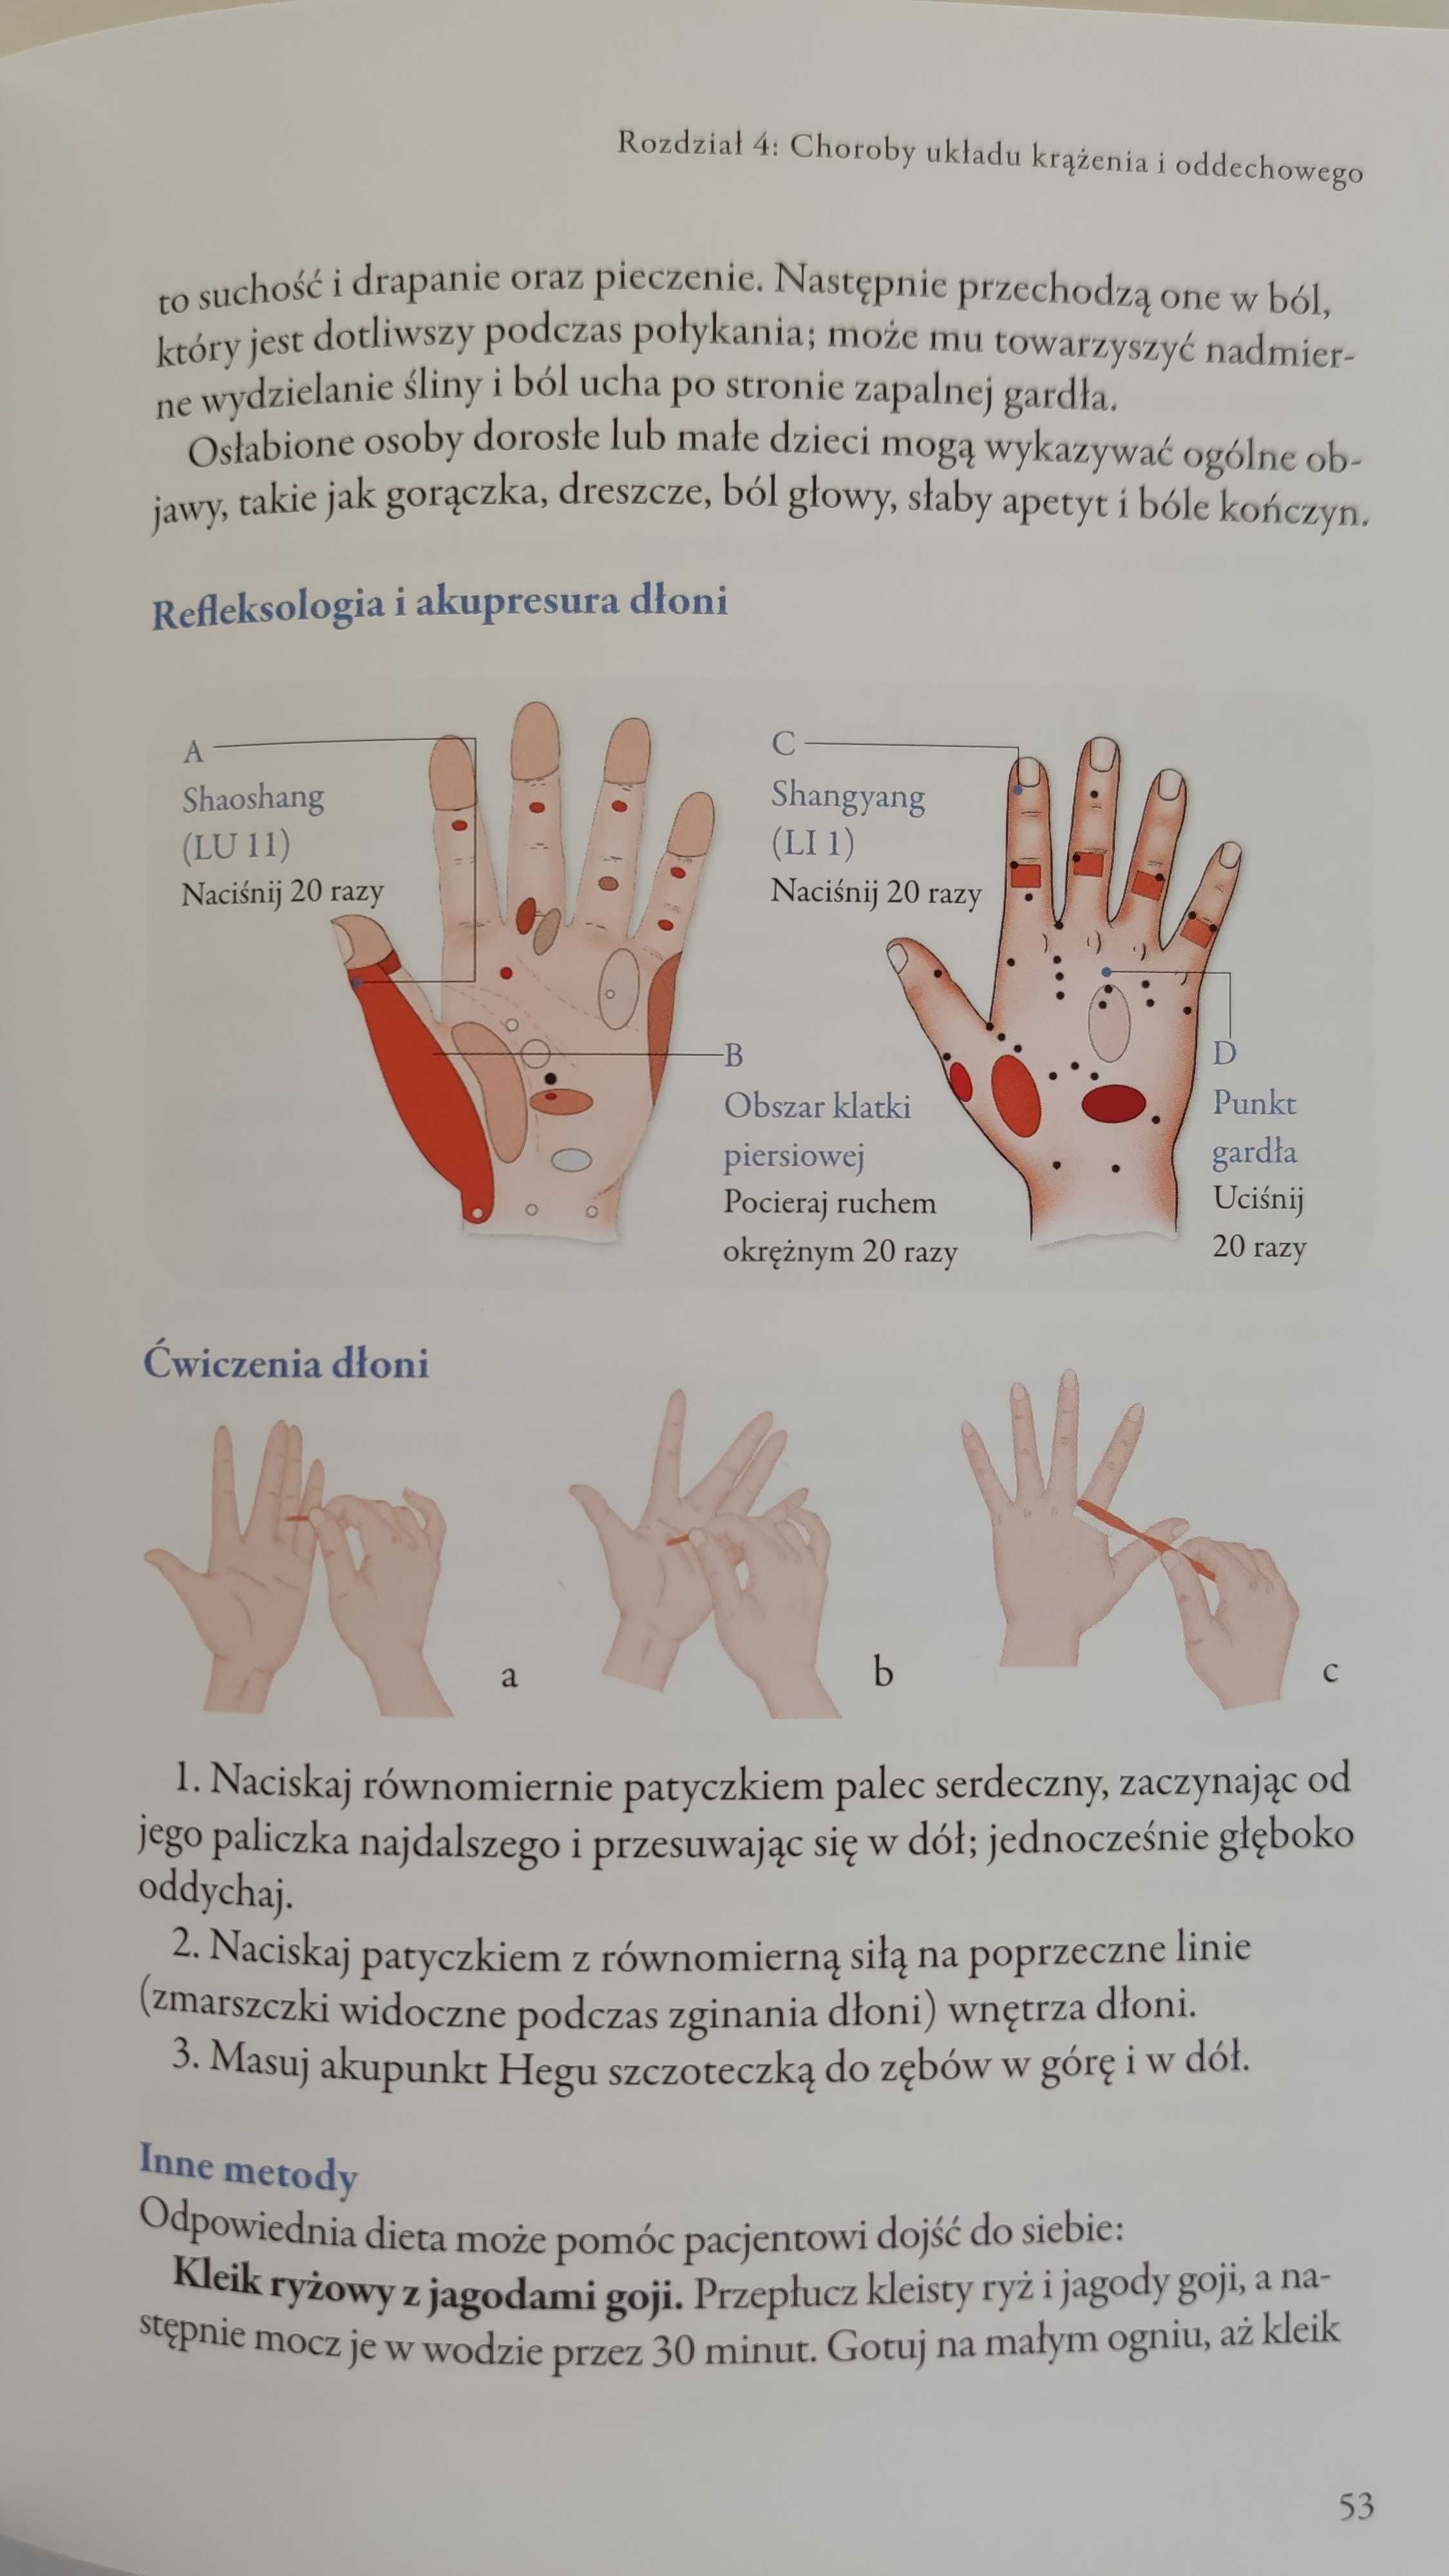 Refleksologia i akupunktura dłoni  Tradycyjnej Medycyny Chińskiej